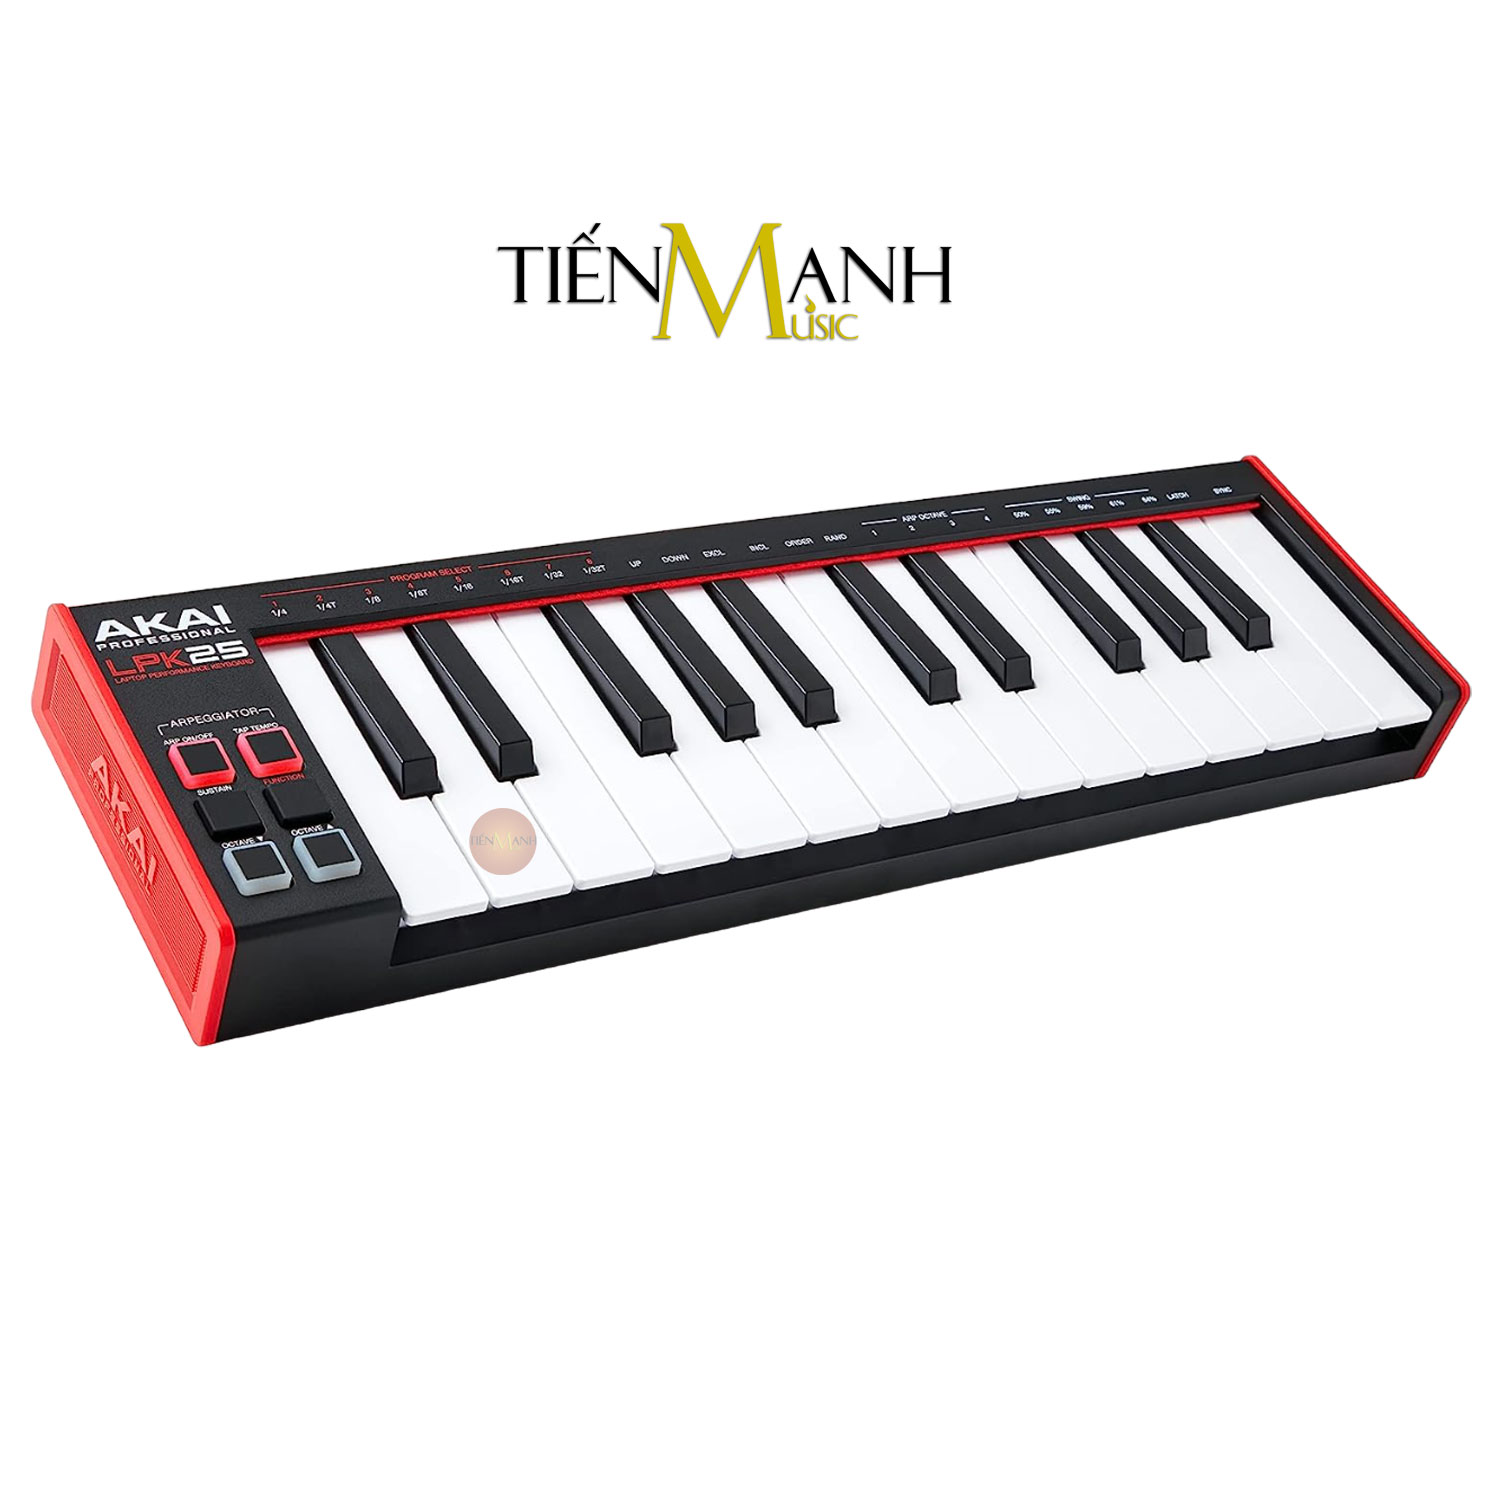 Akai MPK LPK25 - Midi 25 Phím - Compact Keyboard Controller Bàn Phím Sáng Tác Sản Xuất Âm Nhạc Producer Hàng Chính Hãng - Kèm Móng Gẩy DreamMaker